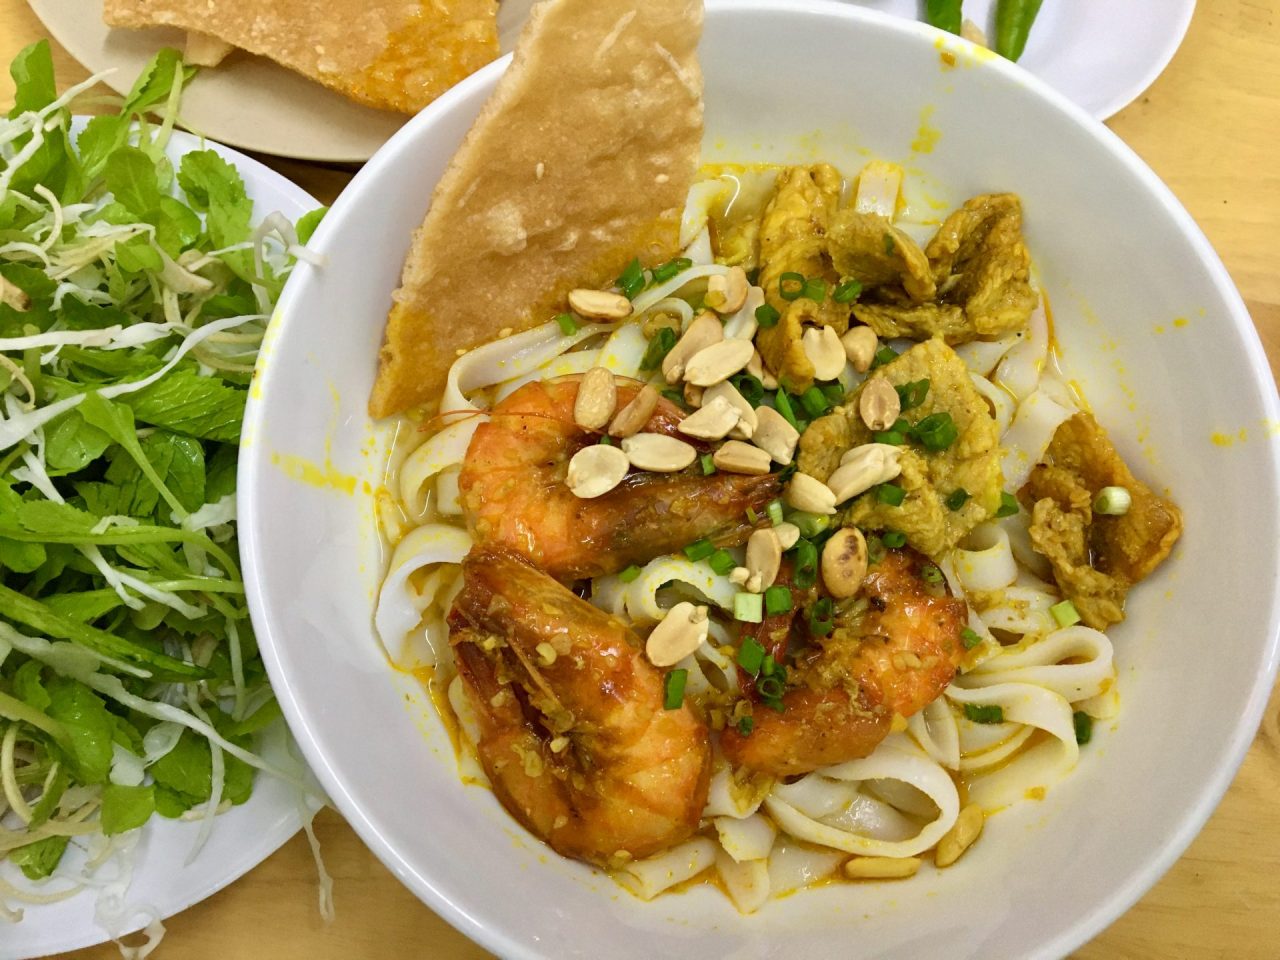 Mì Quảng Tôm Thịt - Yellow Quang Noodles with Pork and Shrimp - Delicious Vietnam